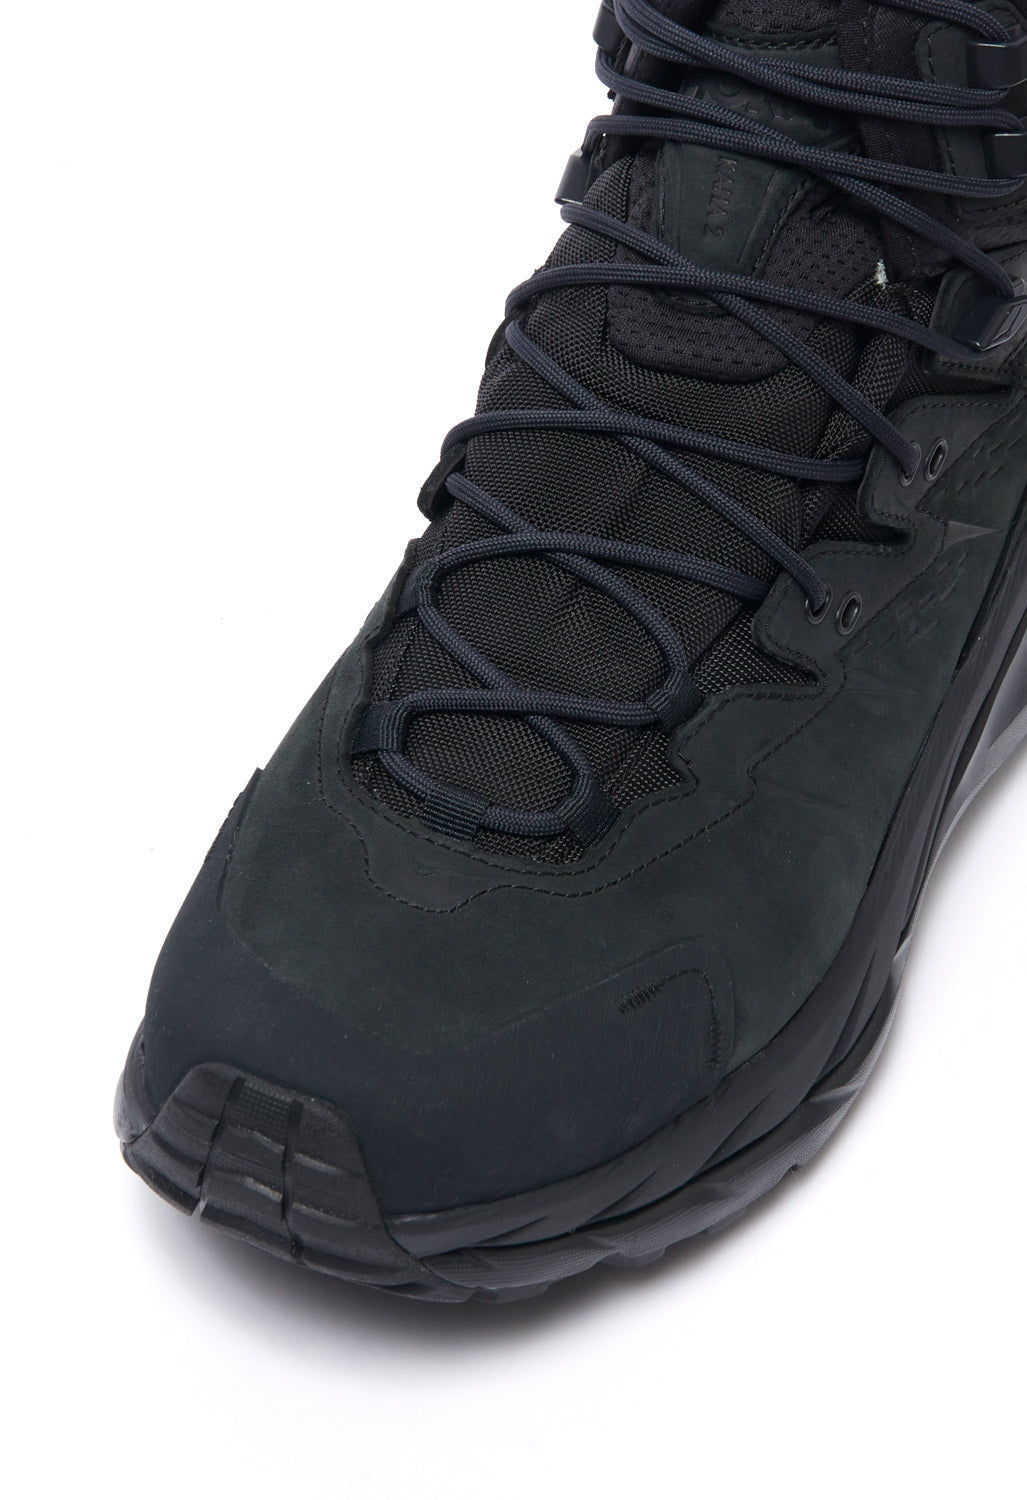 Hoka Kaha 2 GORE-TEX Men's Boots - Black/Black